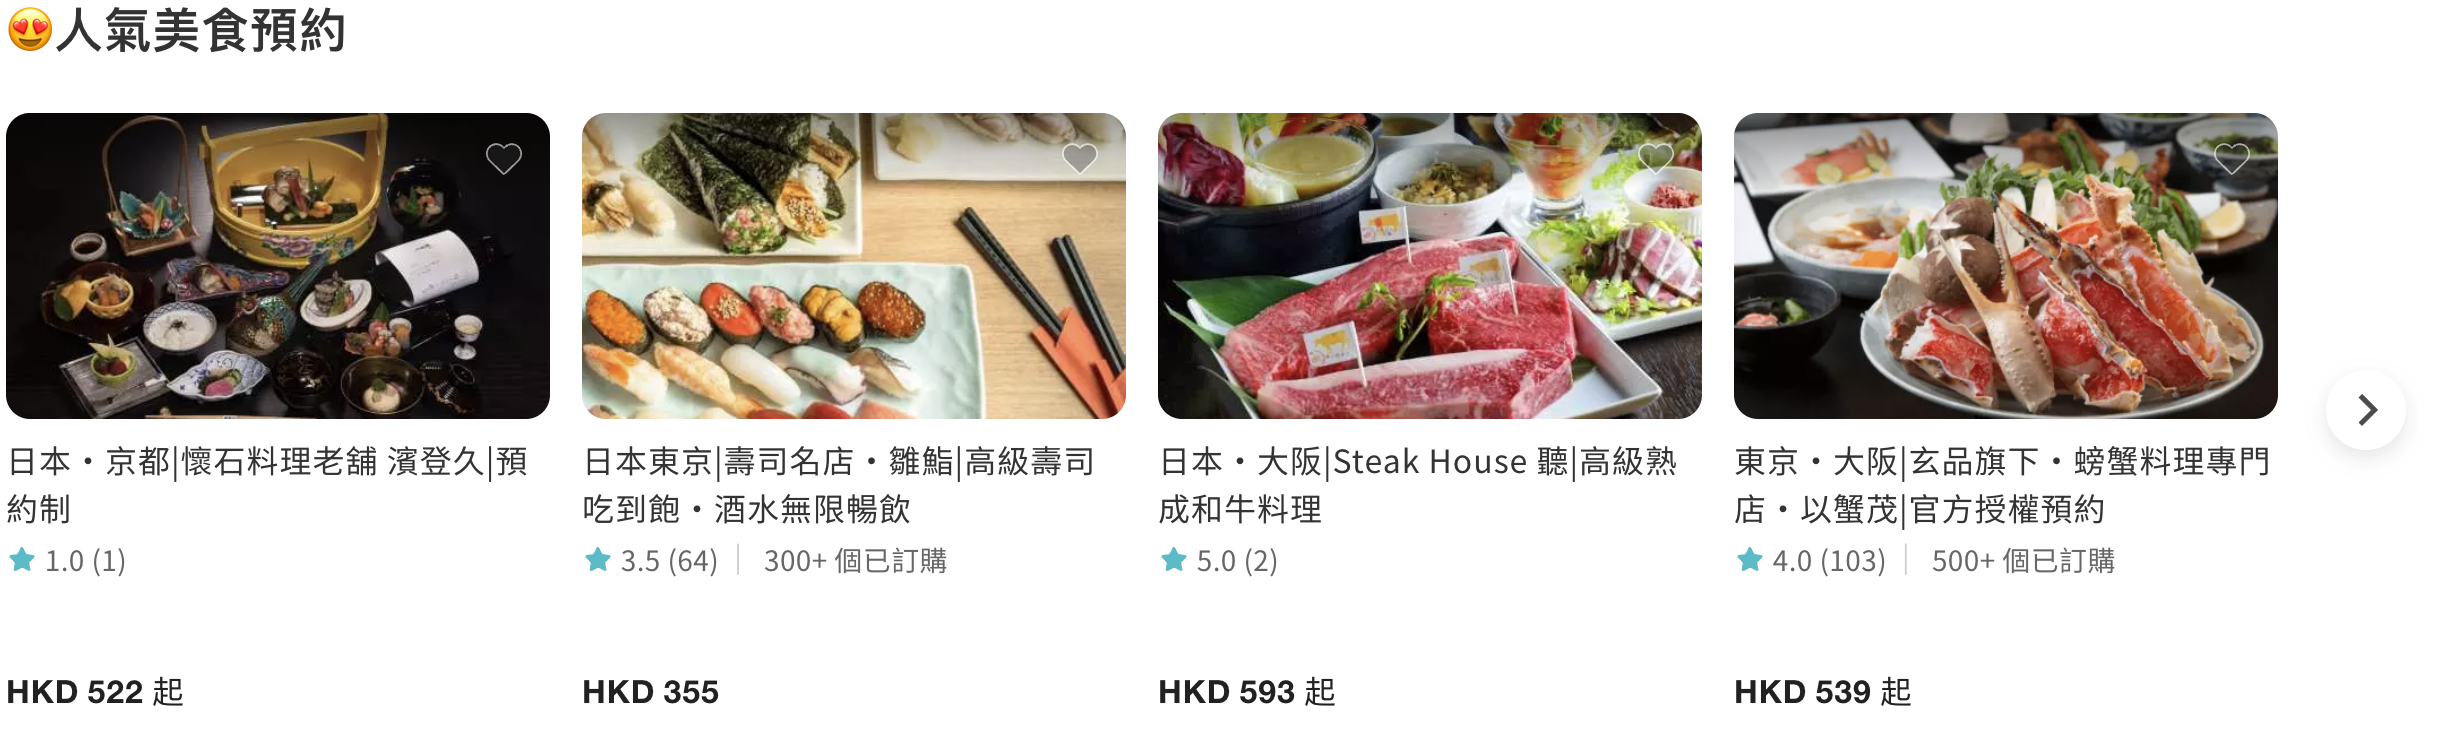 日本美食 日本必去景點 日本購物 日本文化 日本行程 KKday 訂購日本活動優惠